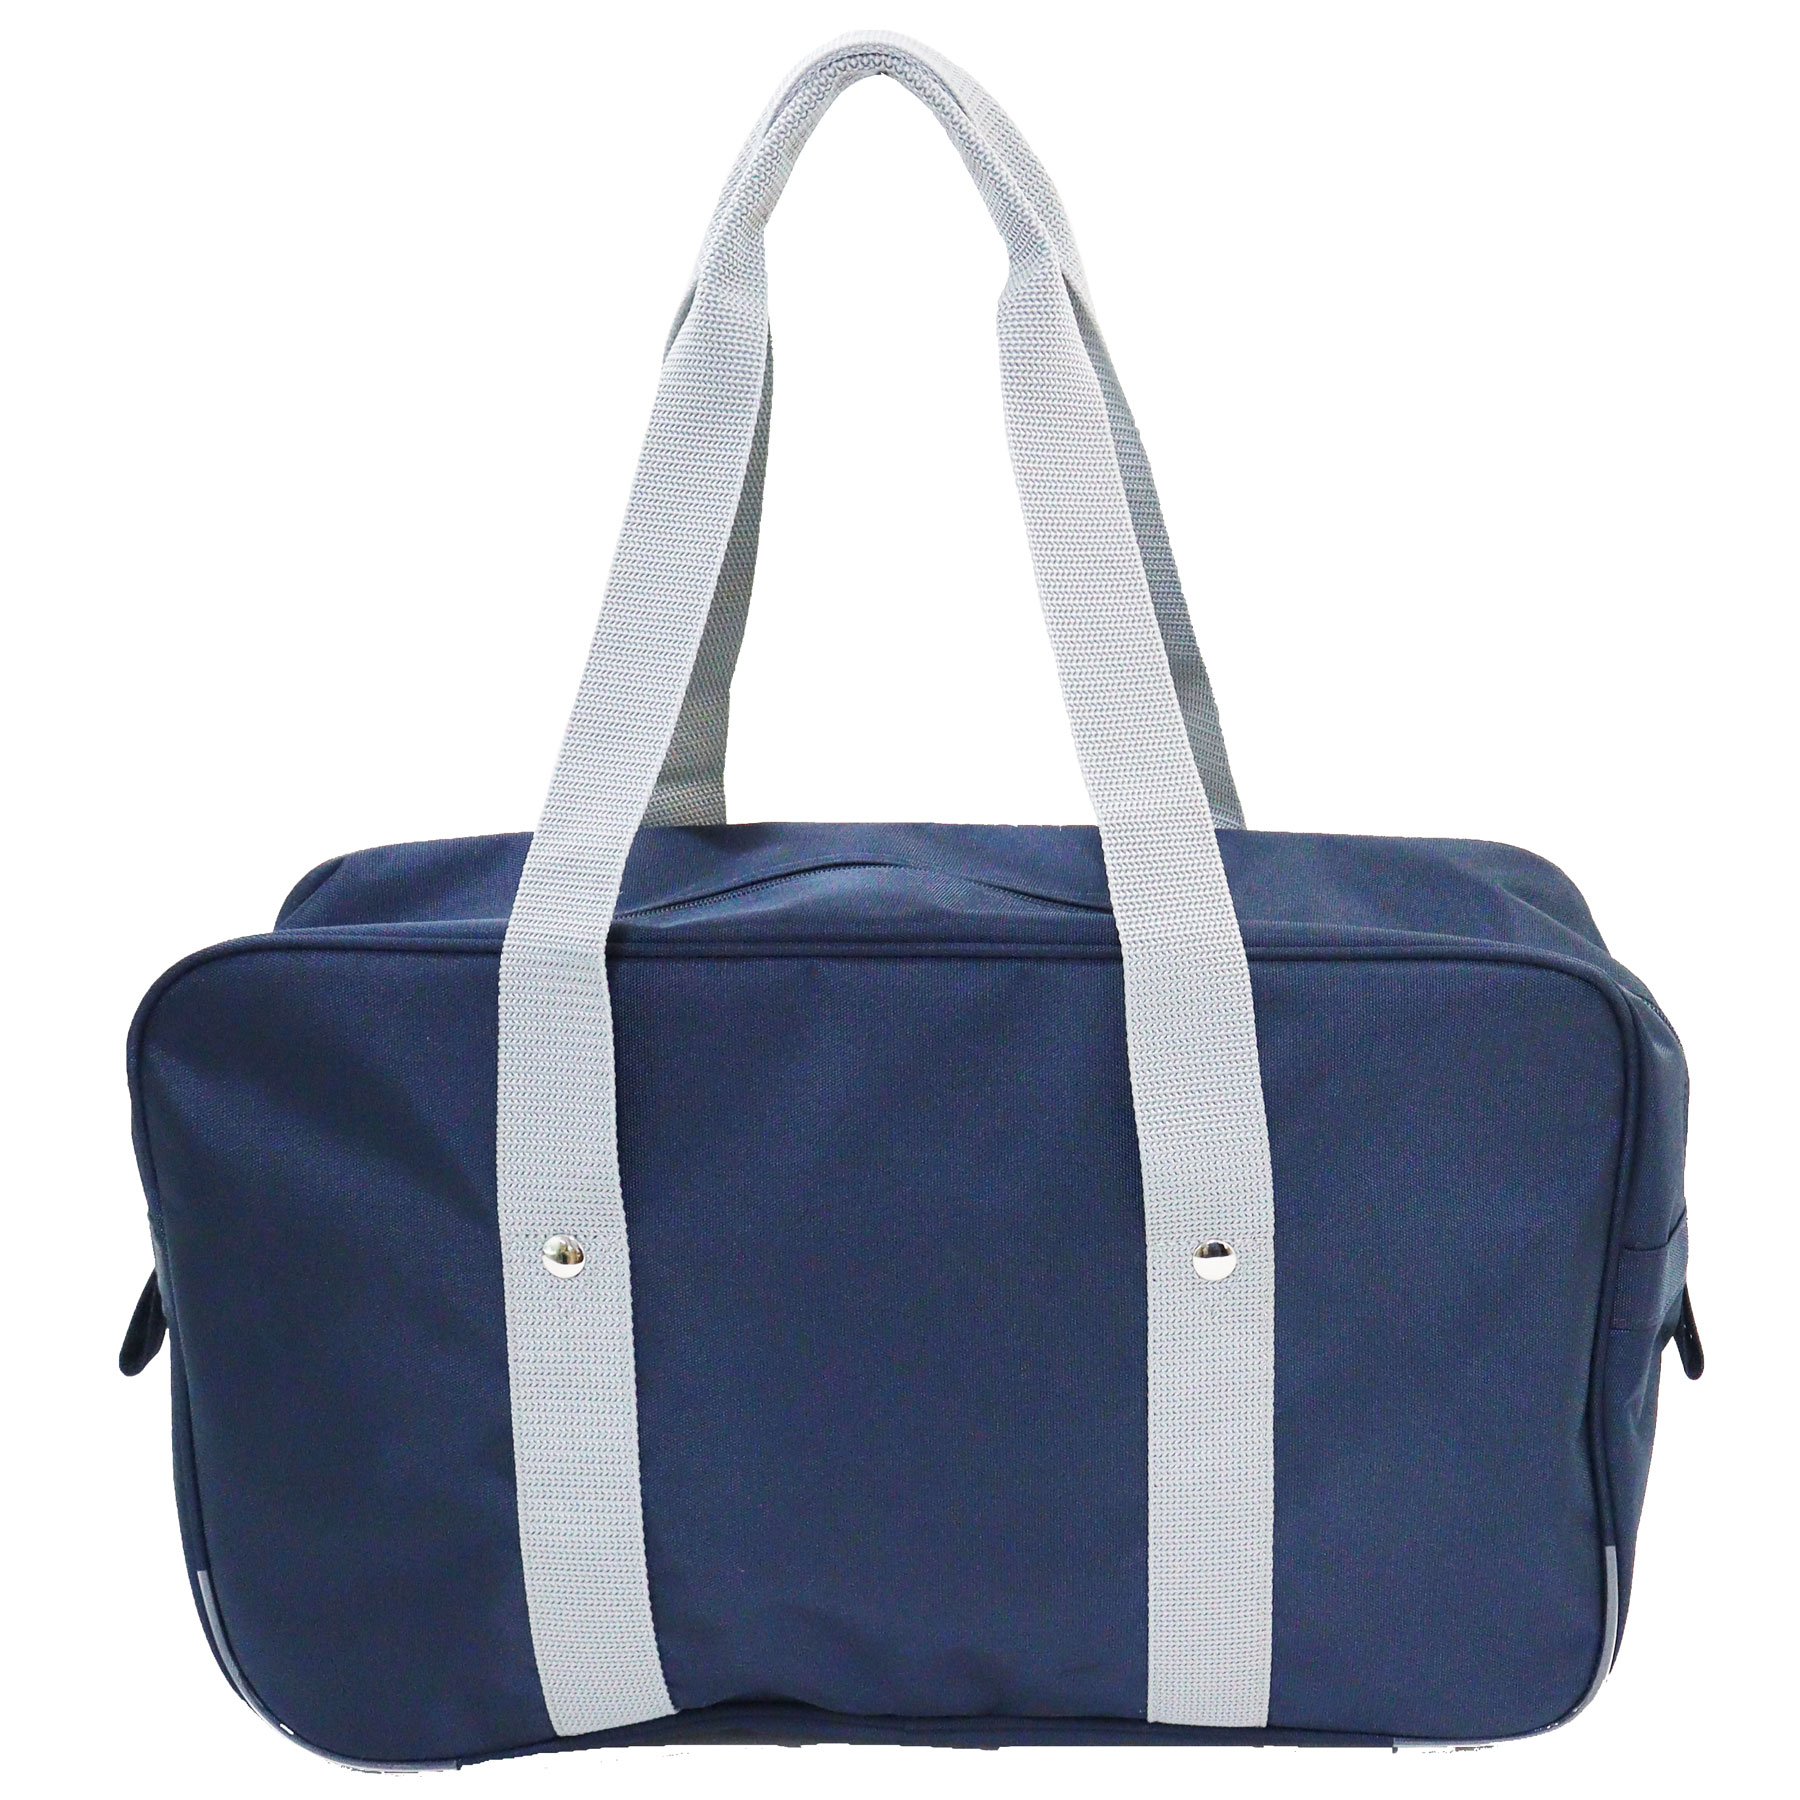  filler школьная сумка нейлон B4 размер соответствует FILA бренд студент портфель school задний skba темно-синий бесплатная доставка ( Okinawa * Hokkaido * отдаленный остров за исключением )